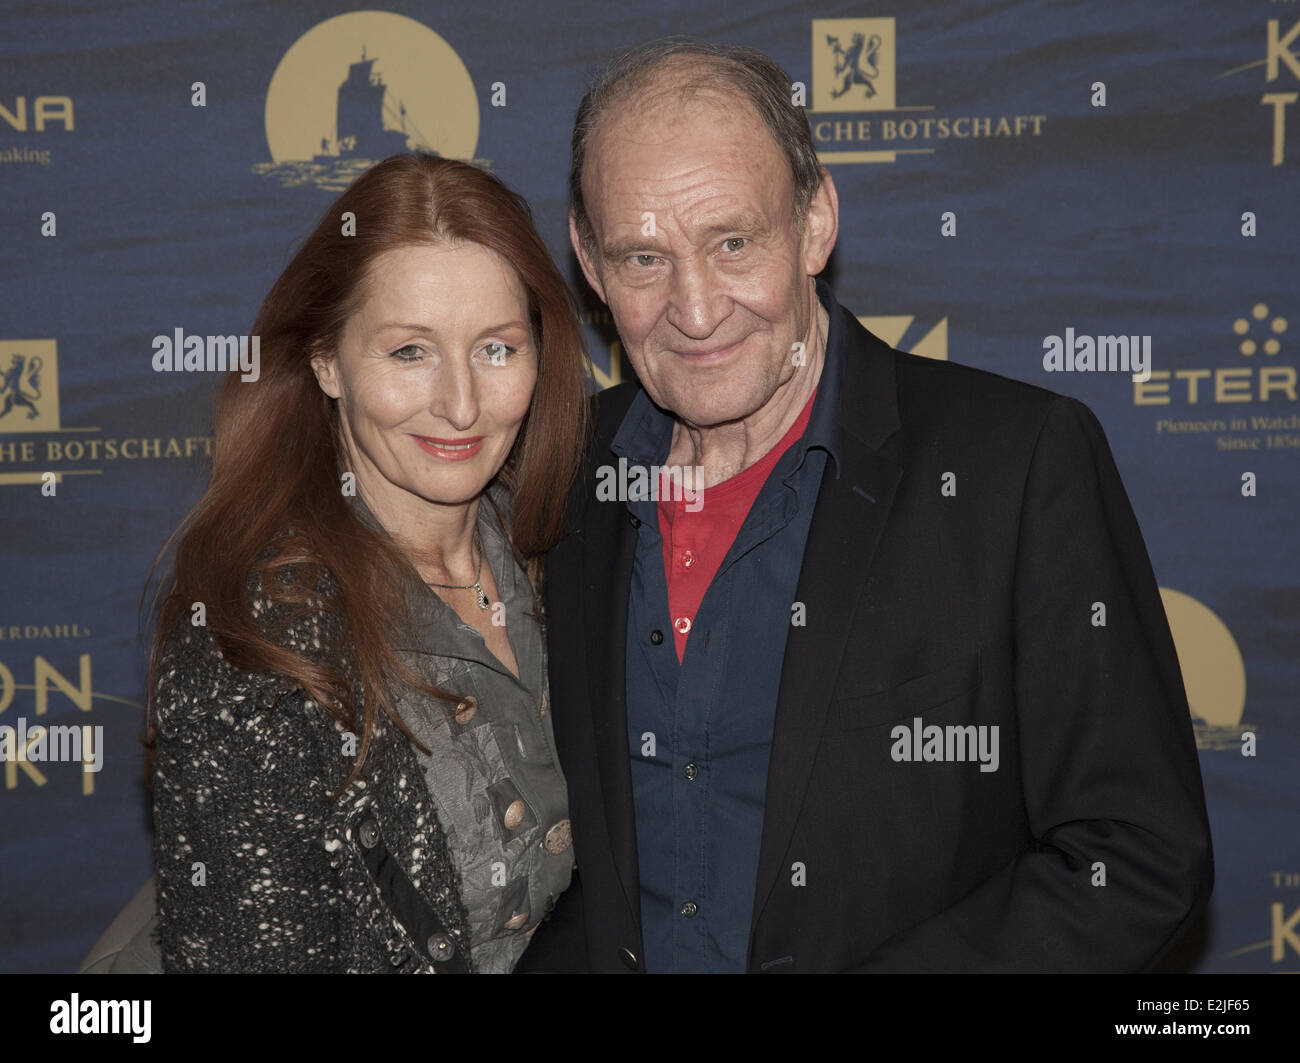 Michael Mendel and woman at the premiere of 'Kon-Tiki' at Kino